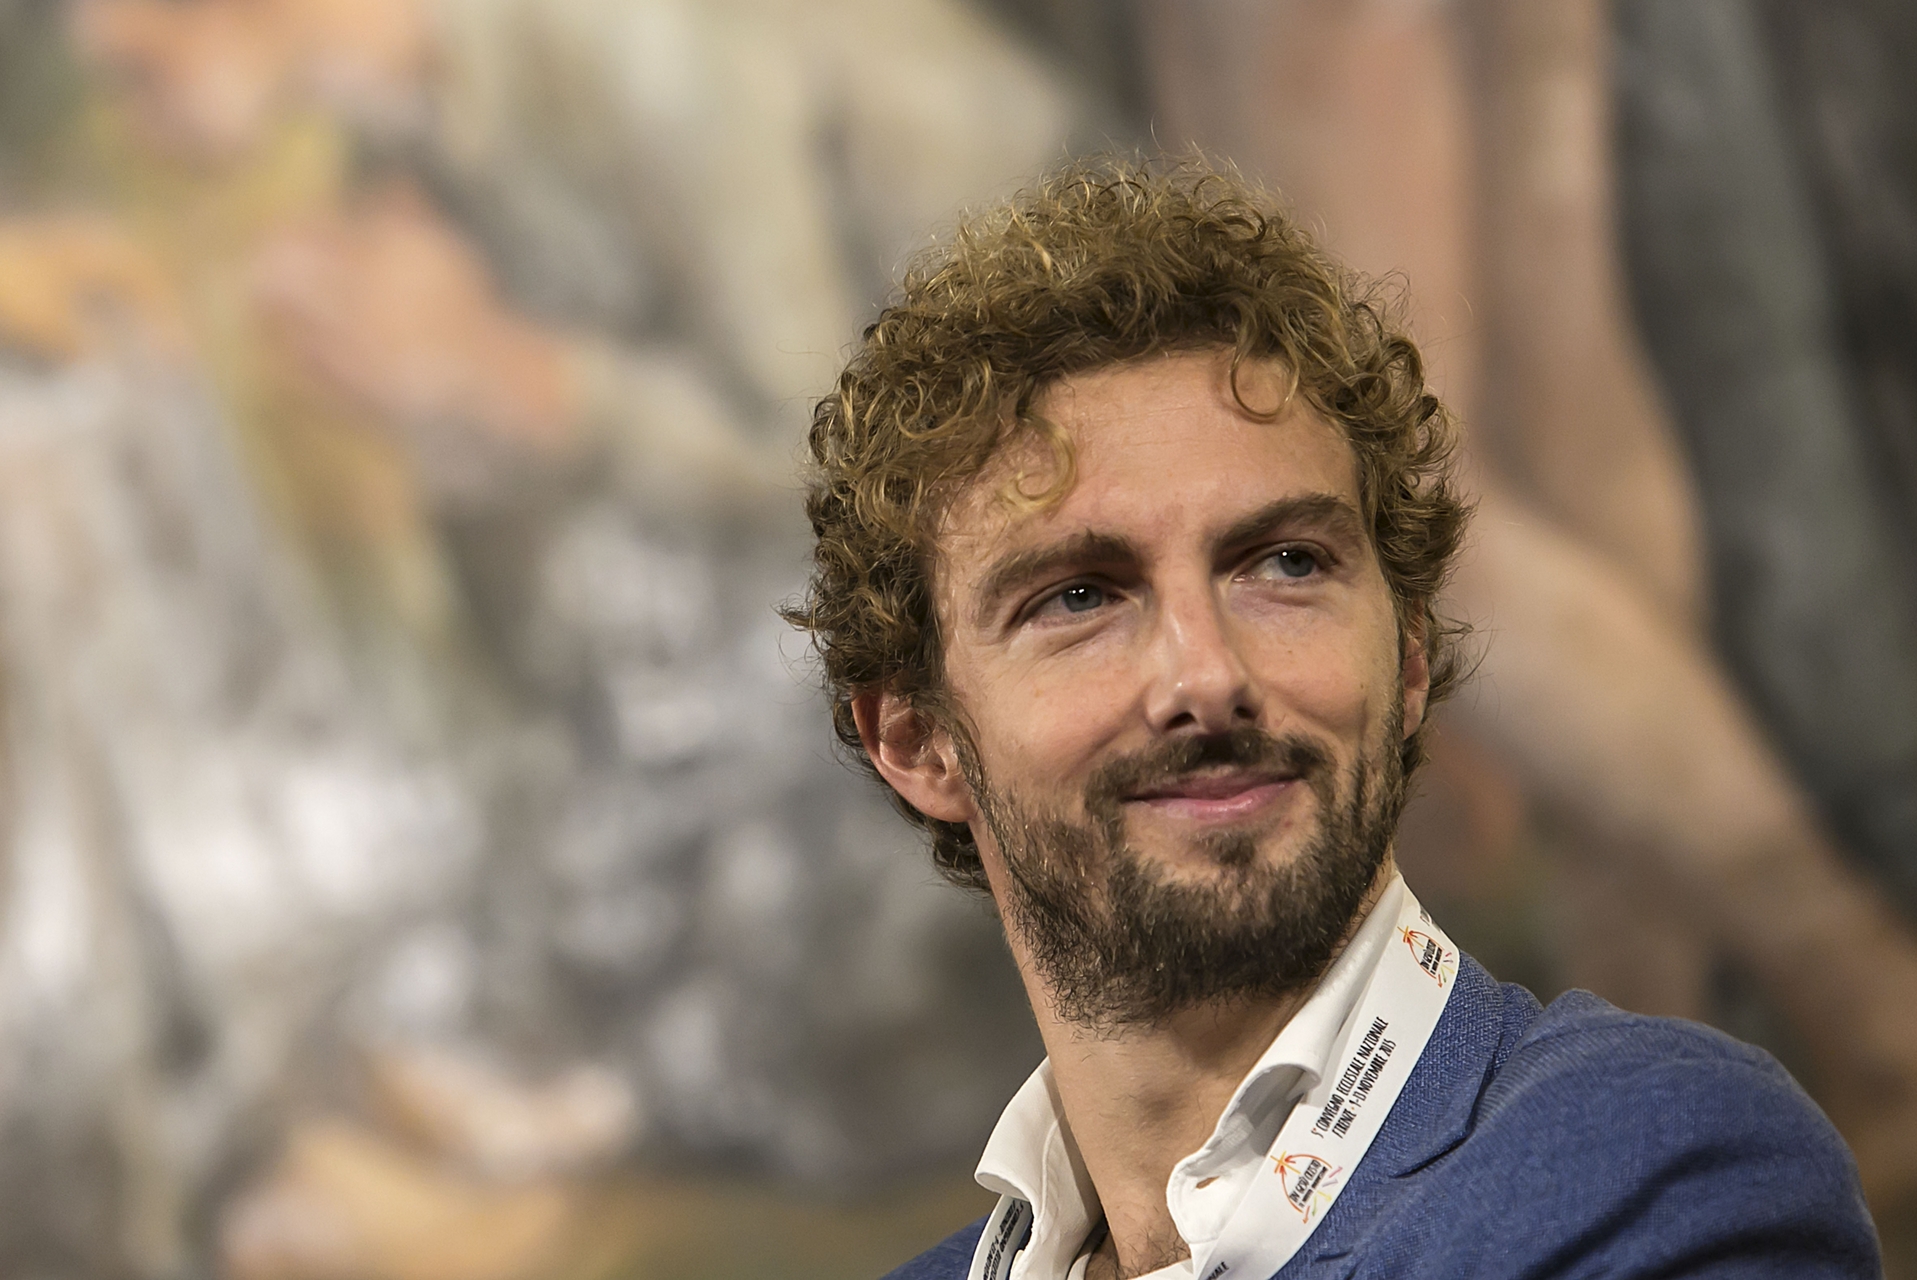 Alessandro D'Avenia, la lezione di Leopardi per la felicità - Corriere Tv